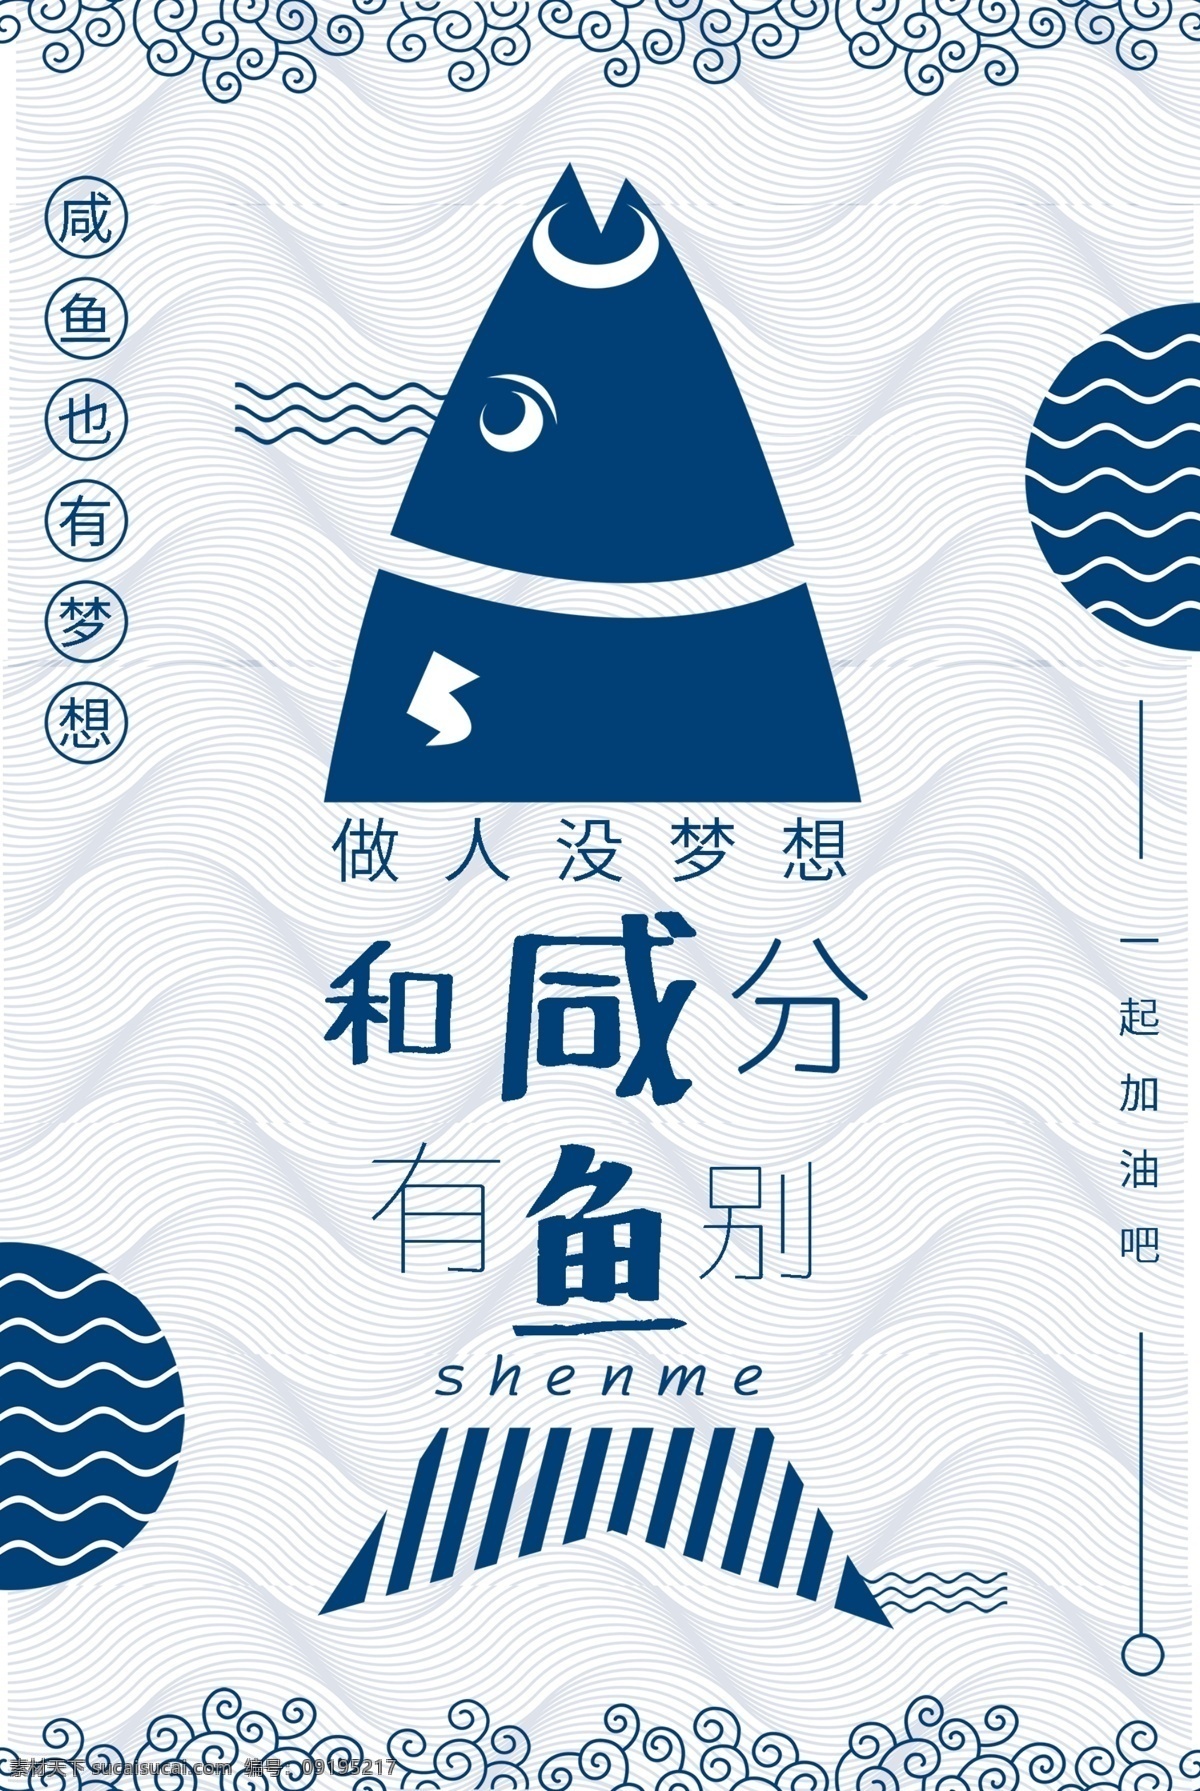 咸鱼 梦想 一起 加油 励志 日本 风格 公益 海报 波浪线 抽象 海洋 日本风 鱼